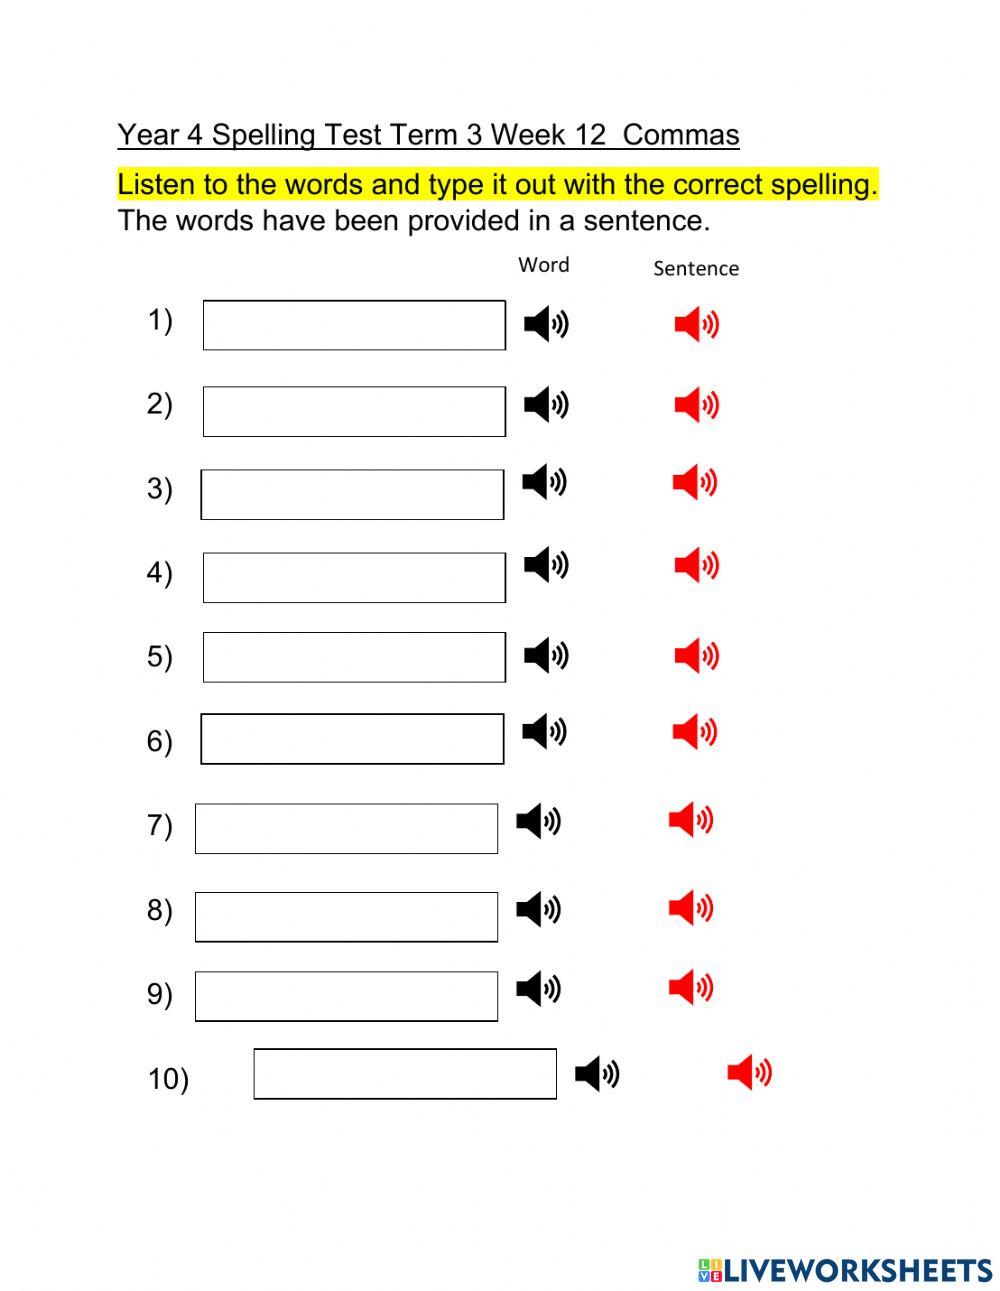 DIS Spelling Test Term 3 Week 12 Commas